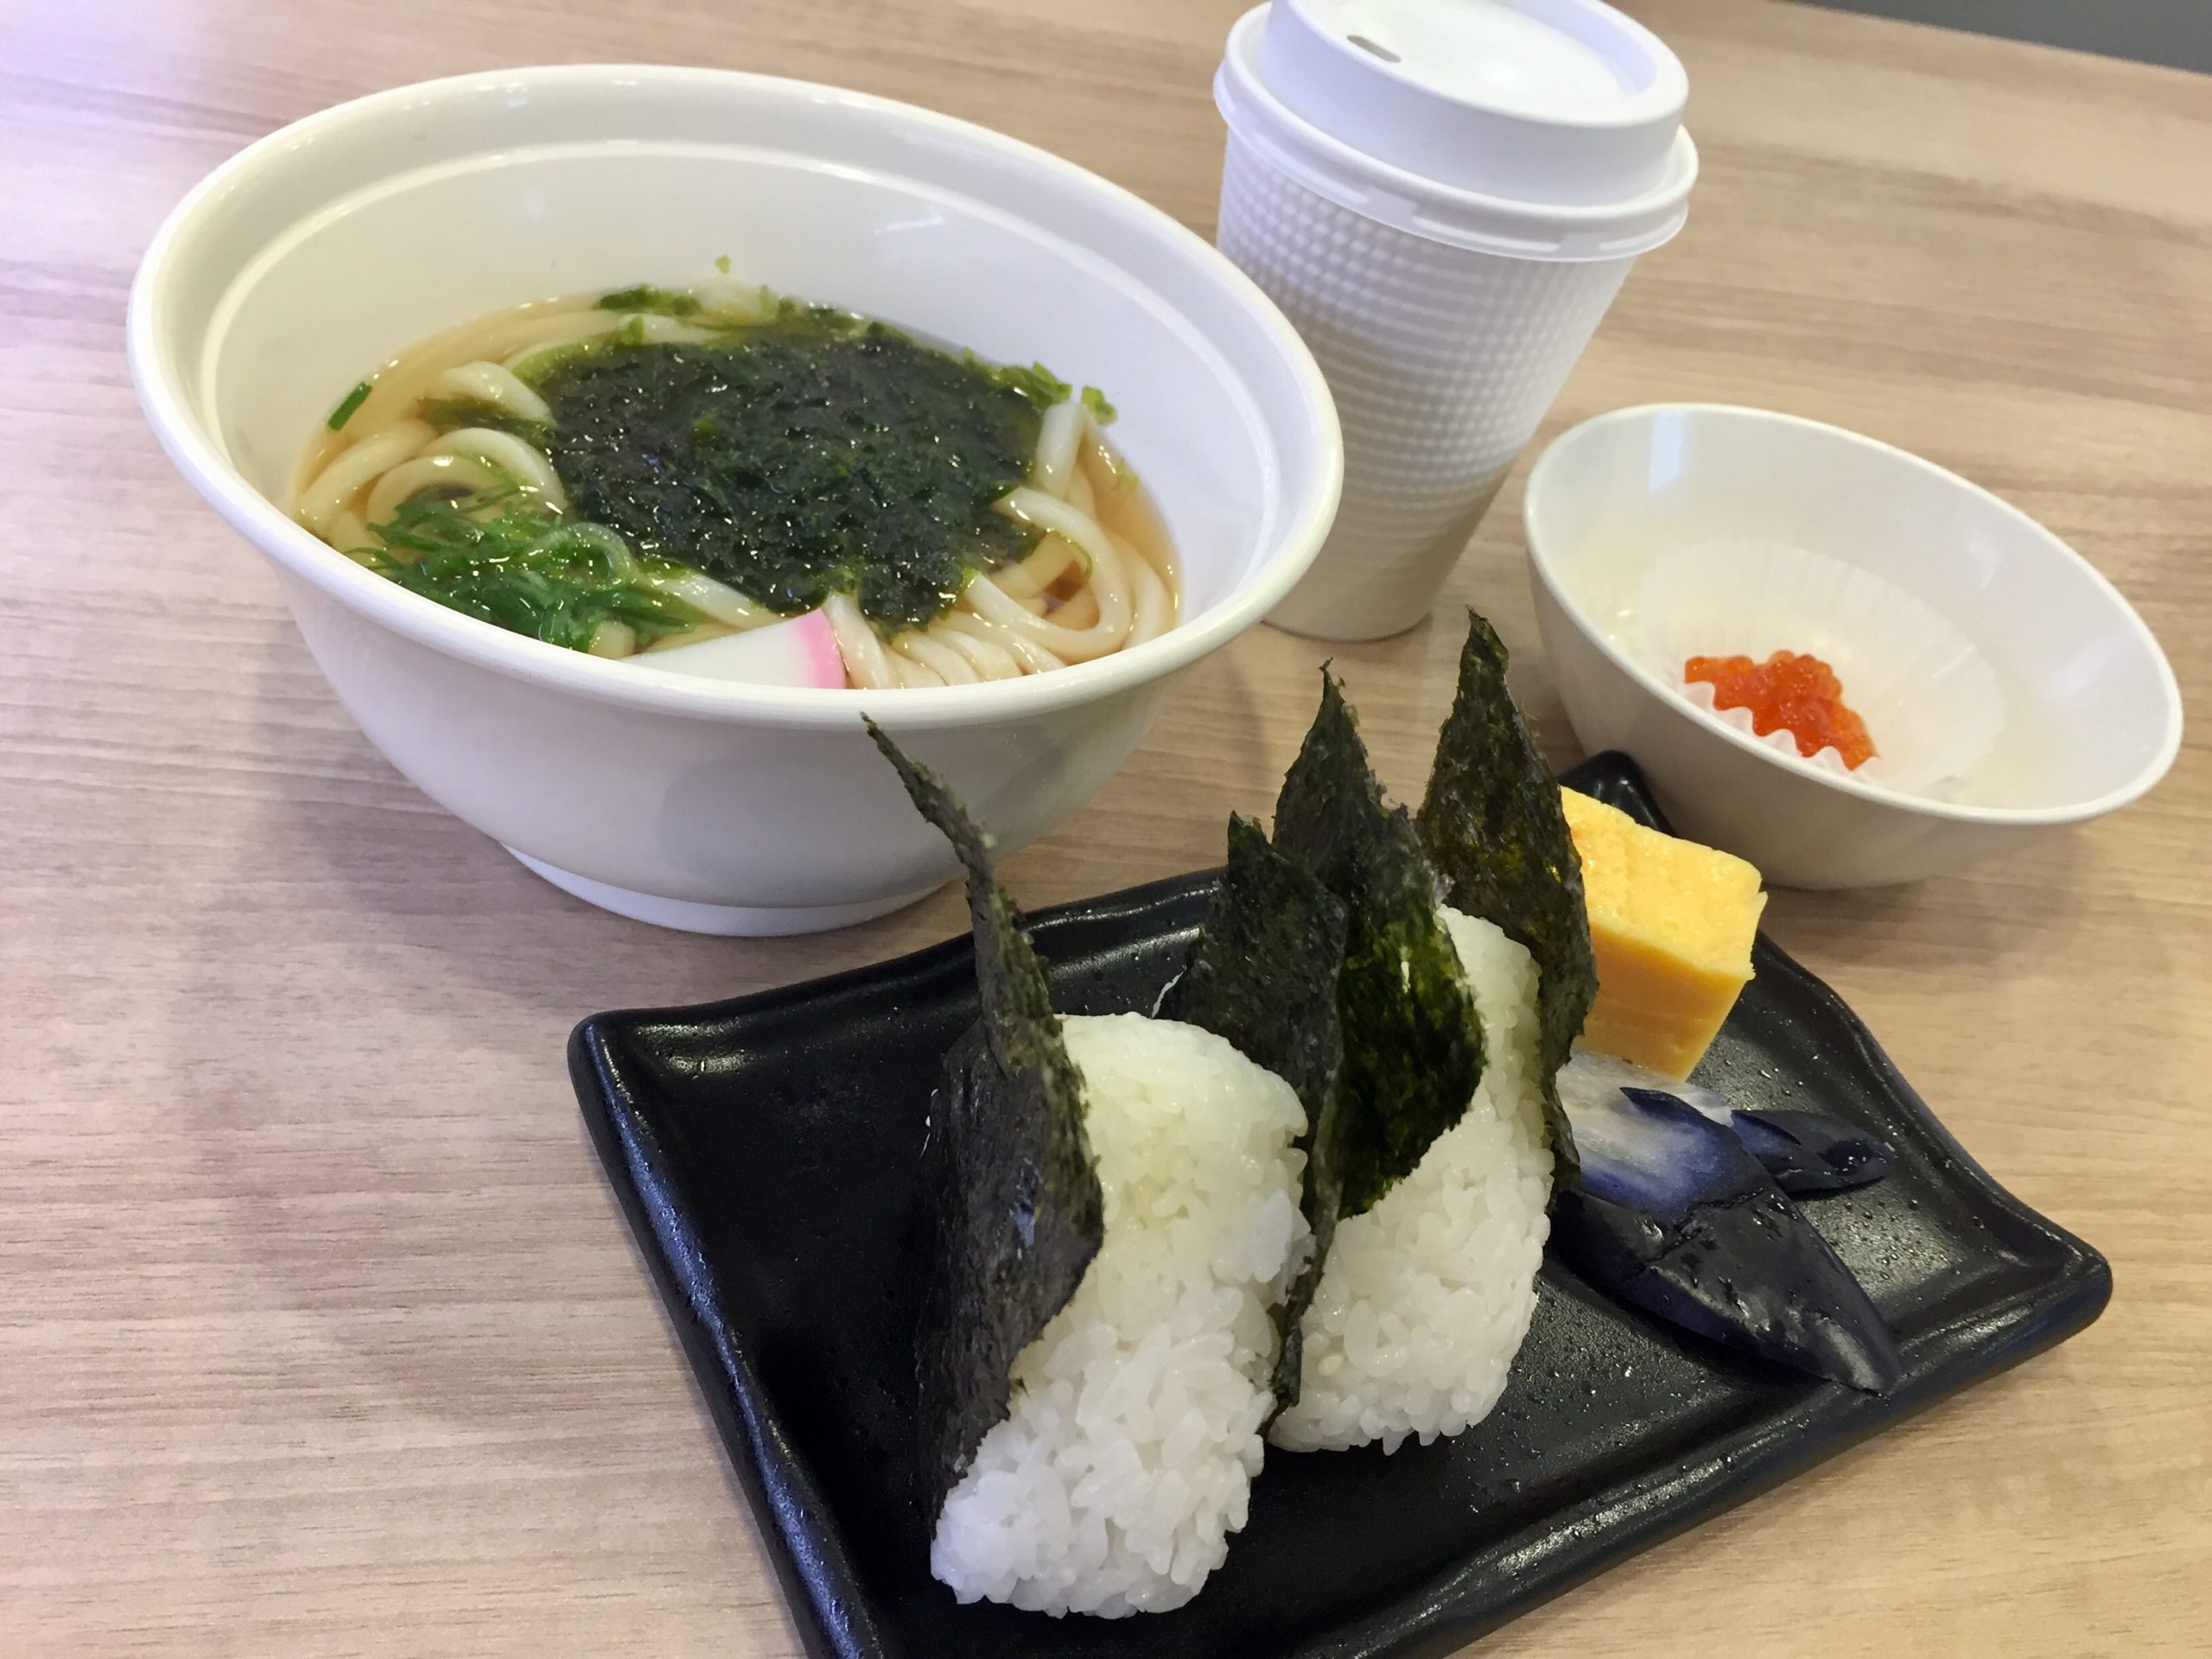 回転寿司店でモーニング 福島市内店舗限定 かっぱ寿司 の朝食メニューを実食